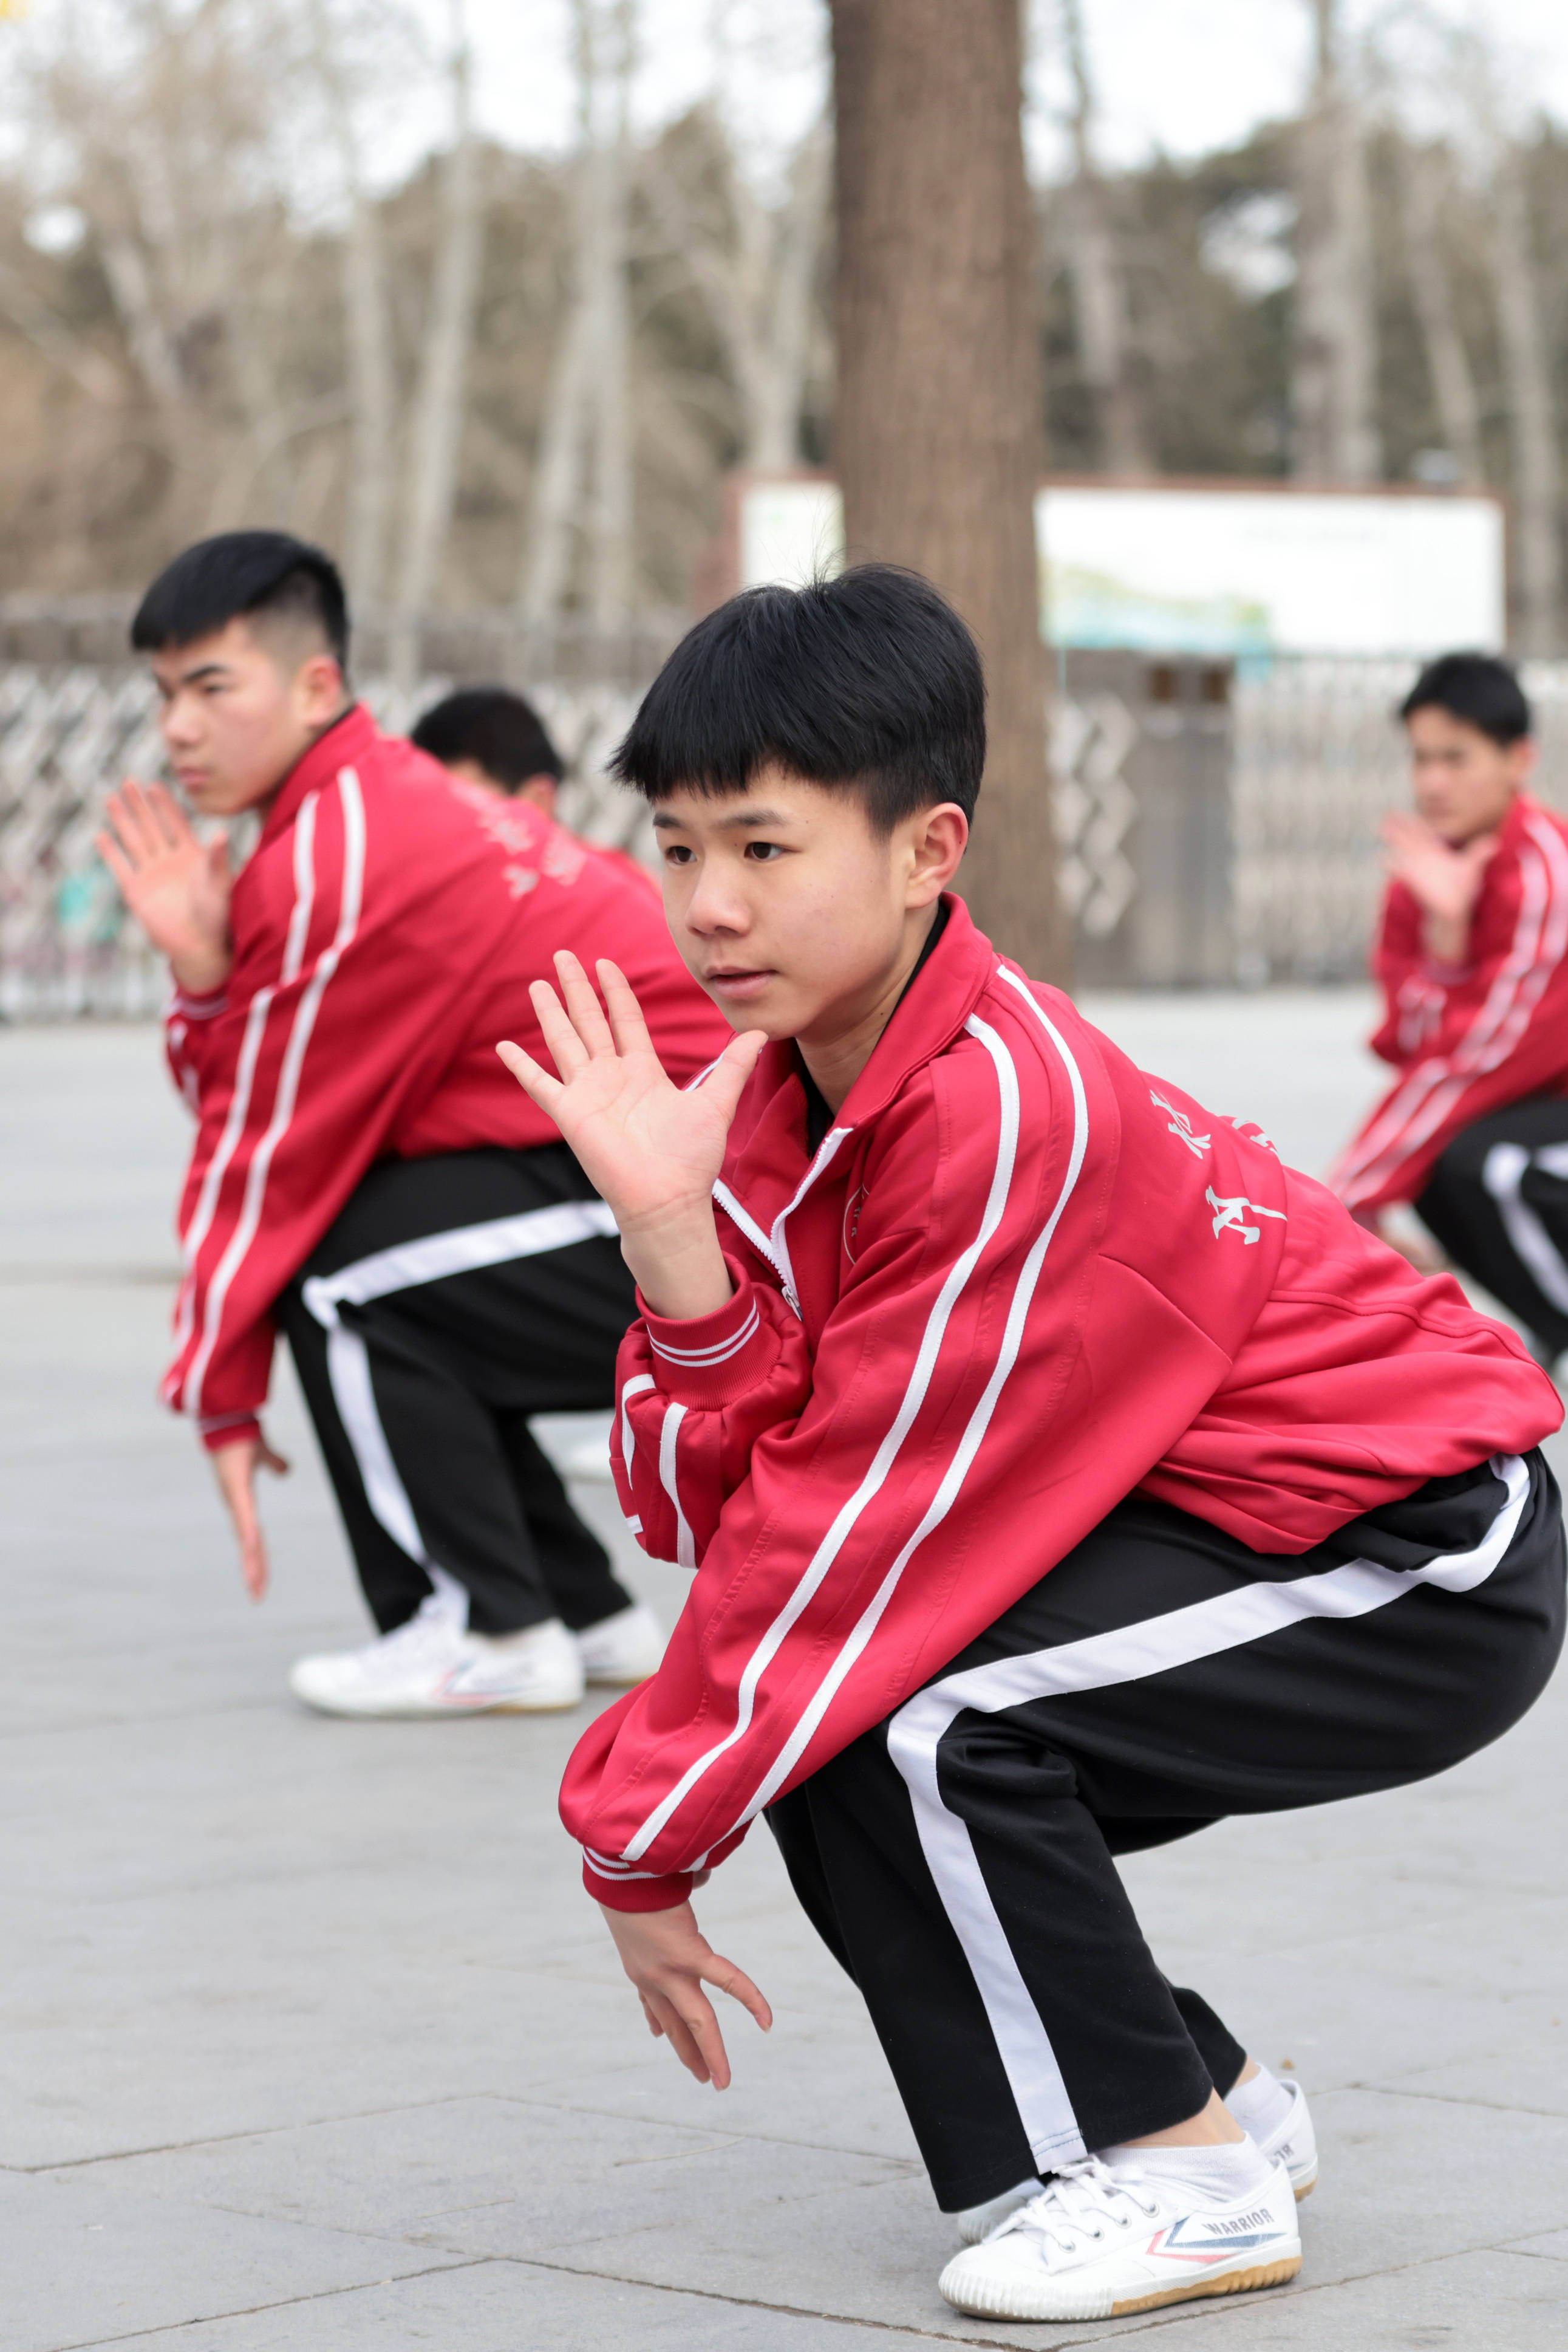 来自河南商丘的7岁功夫小子付力源,是塔沟武校春晚团队中年龄最小的